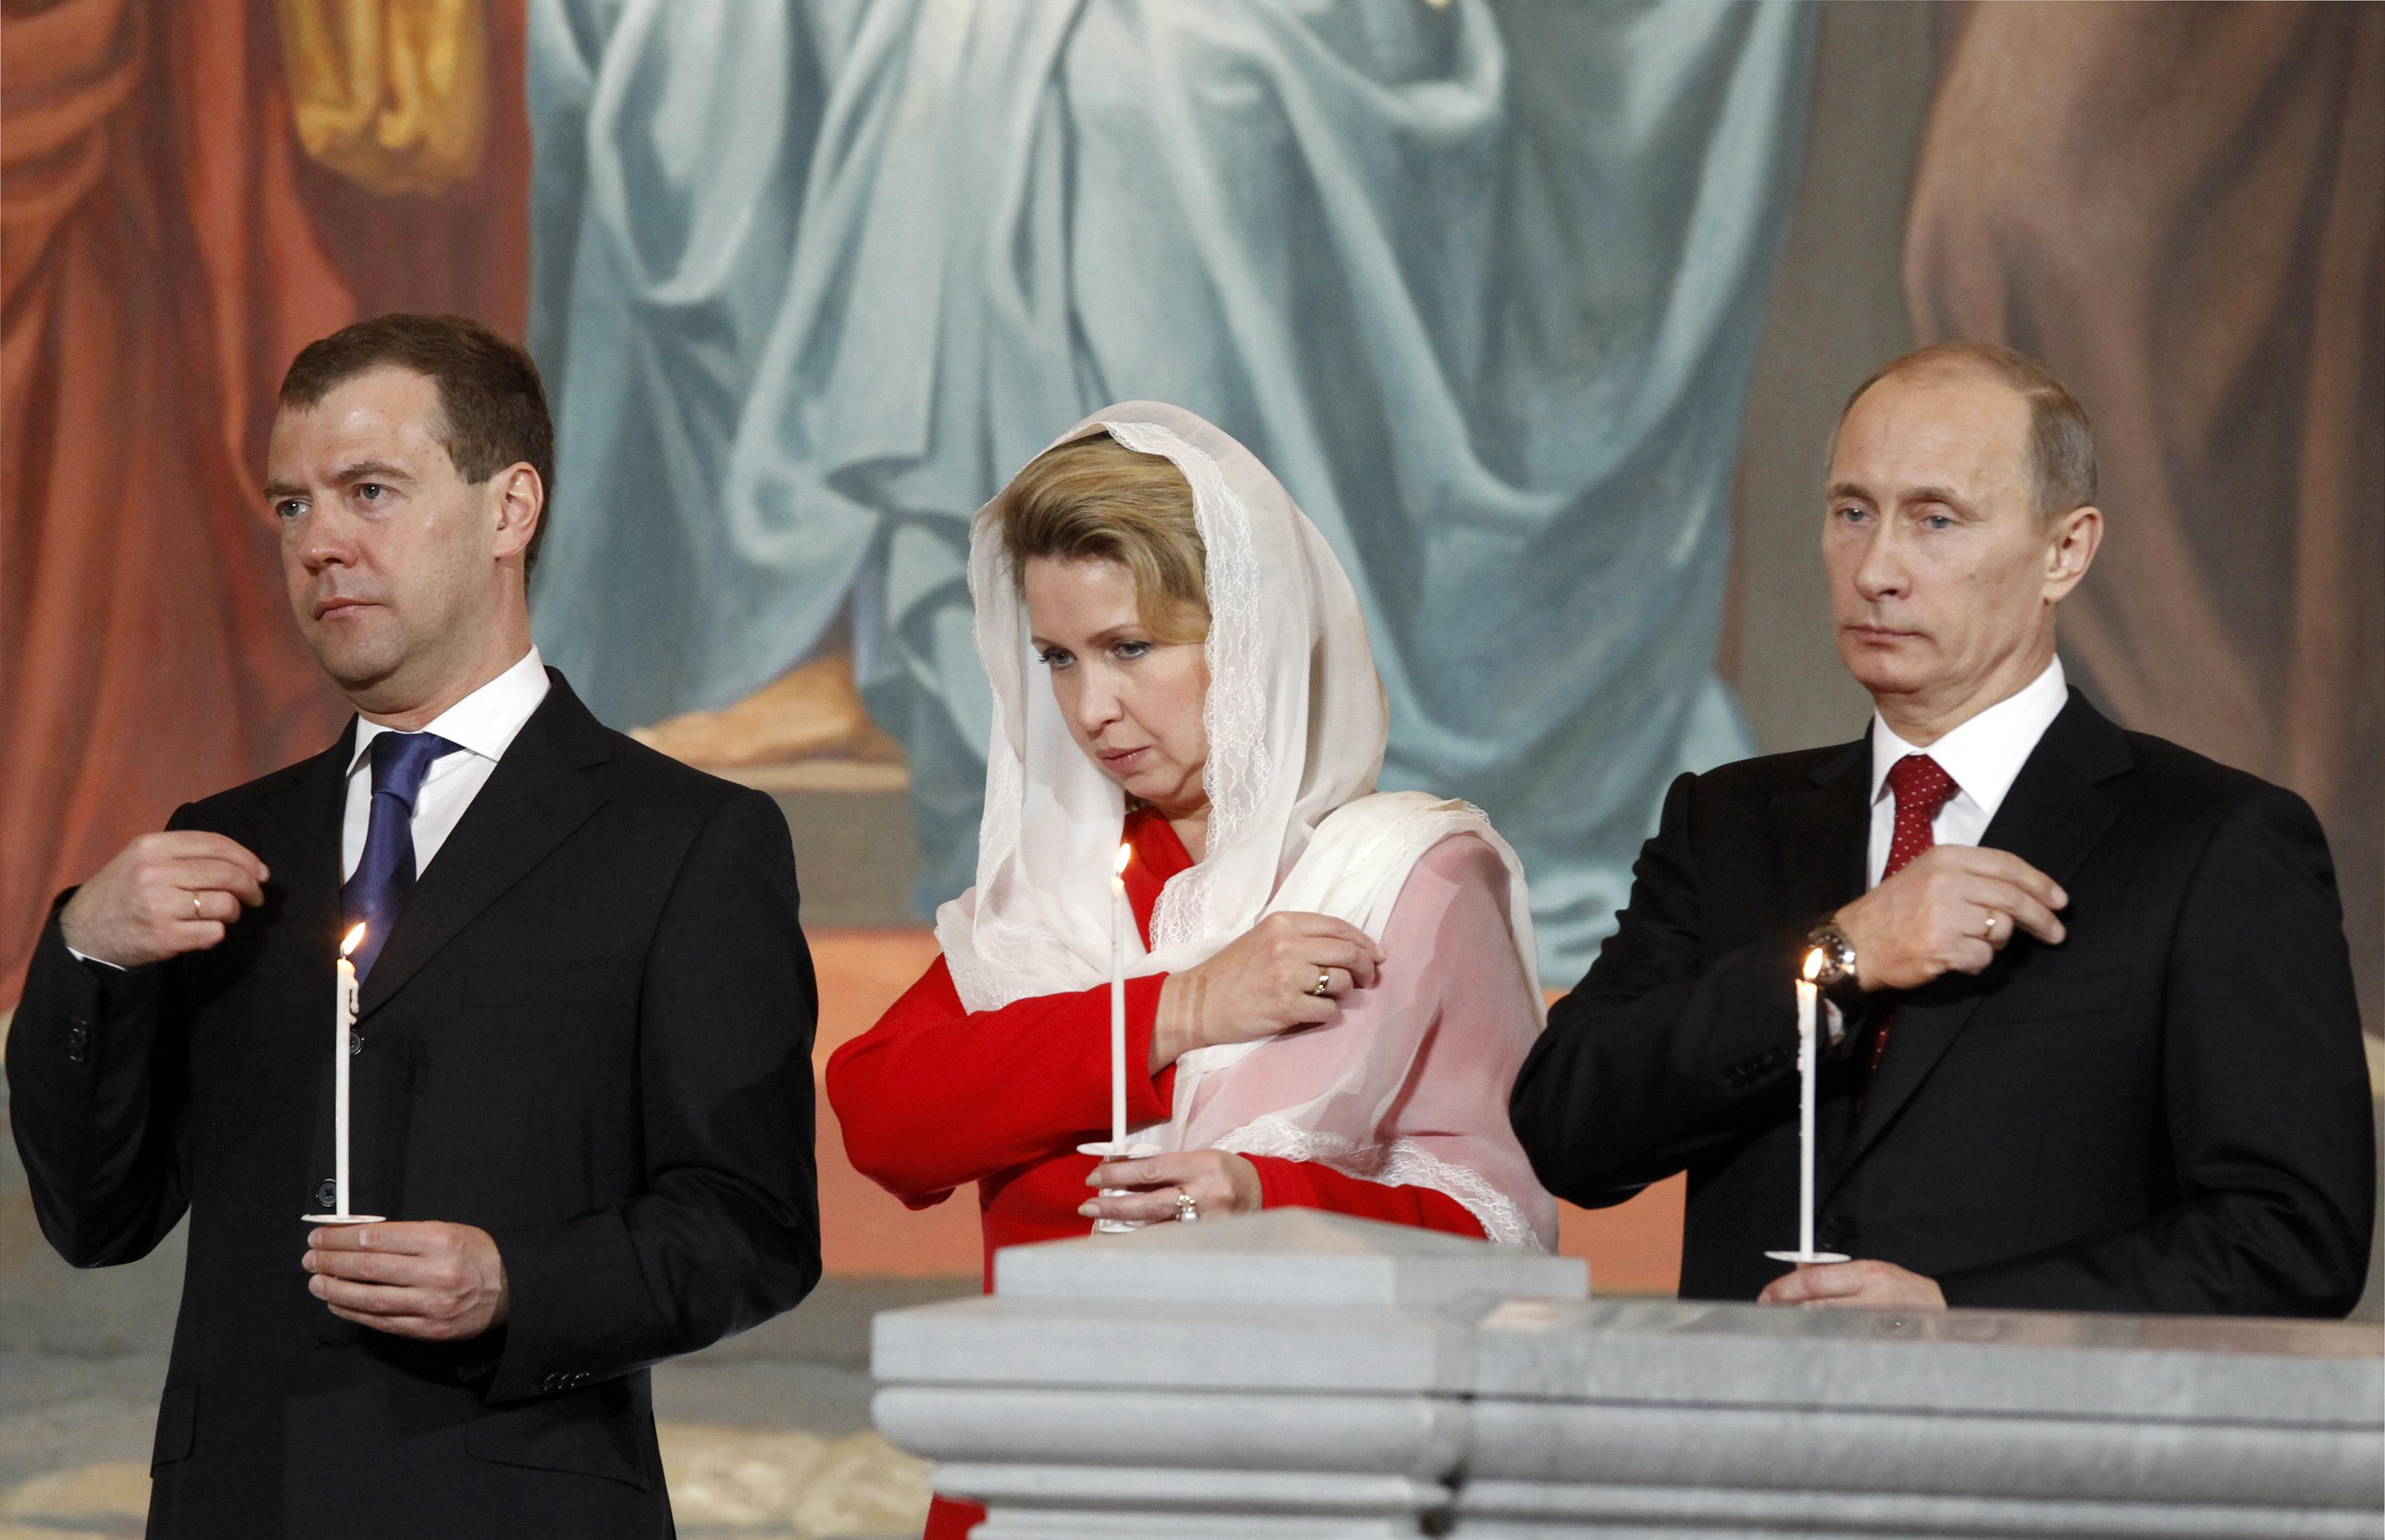 Ο πρόεδρος Μεντβέντεφ, η σύζυγός του και ο πρωθυπουργός Πούτιν στο ναό του Σωτήρος στη Μόσχα